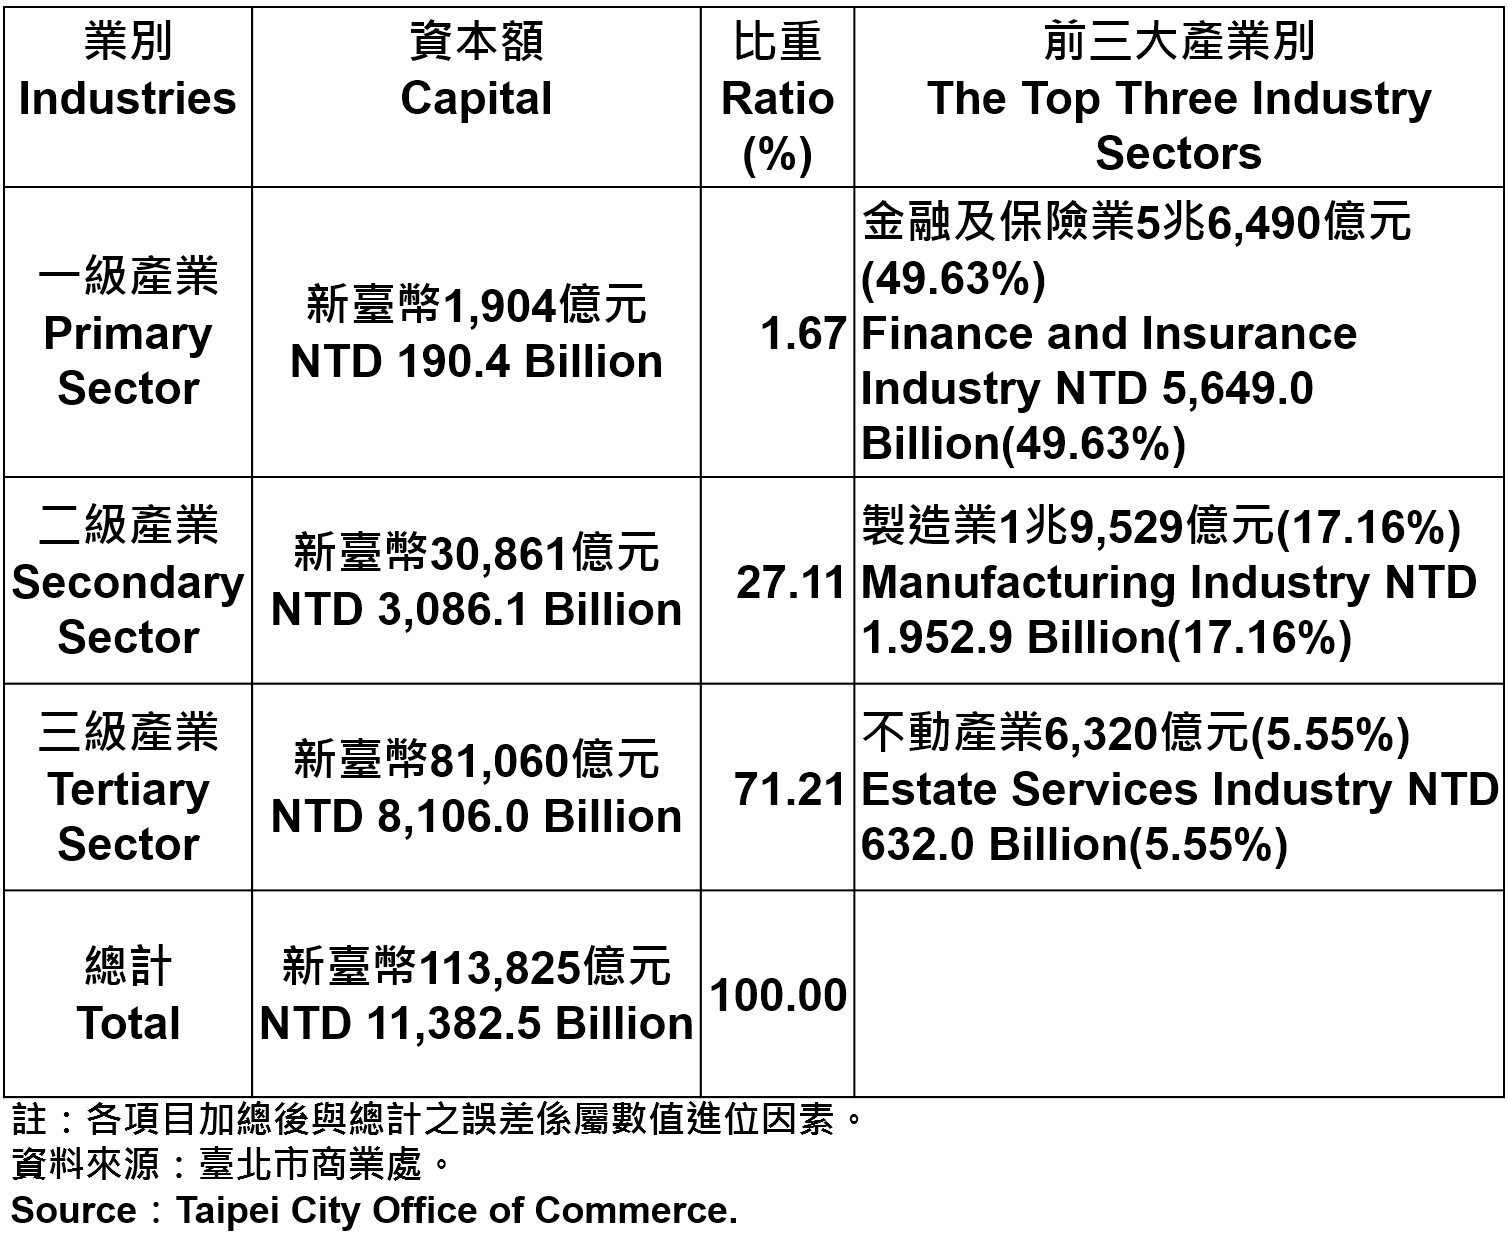 表4 臺北市登記之公司行號資本總額—2015年第4季 Capital for the Companies and Firms Registered in Taipei—2015Q4